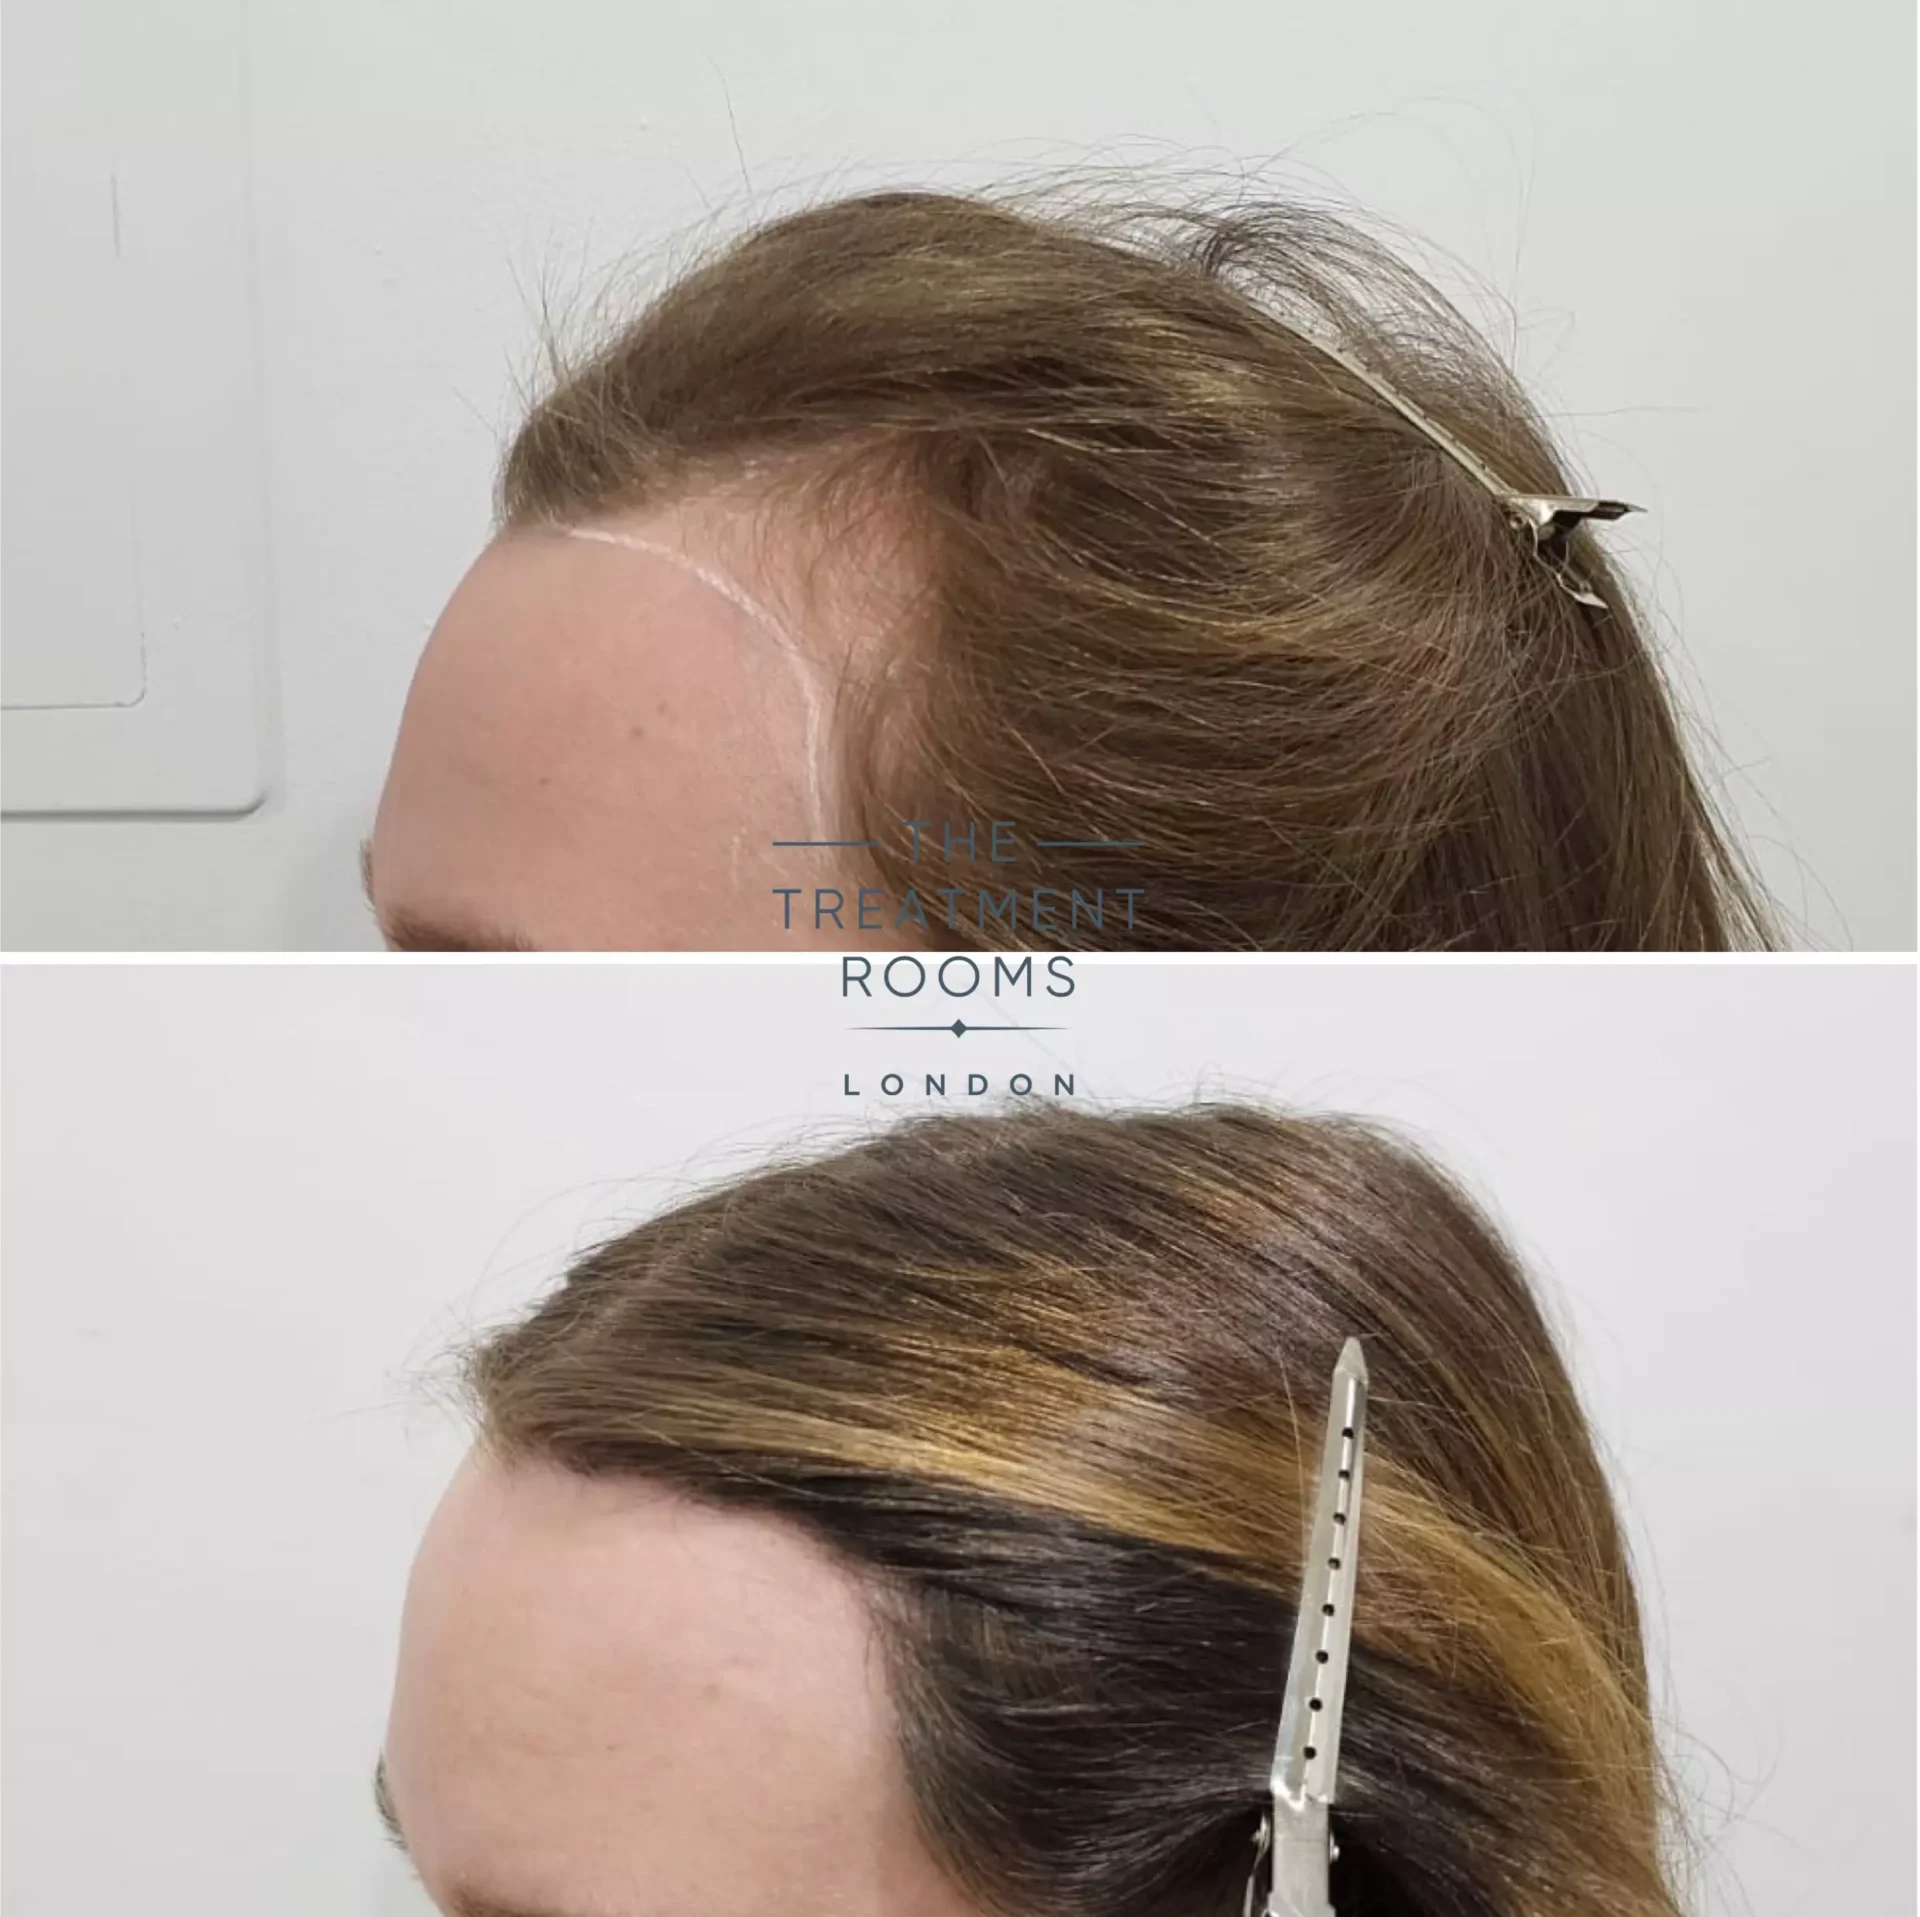 transgender hairline transplant london 1553 grafts before and after